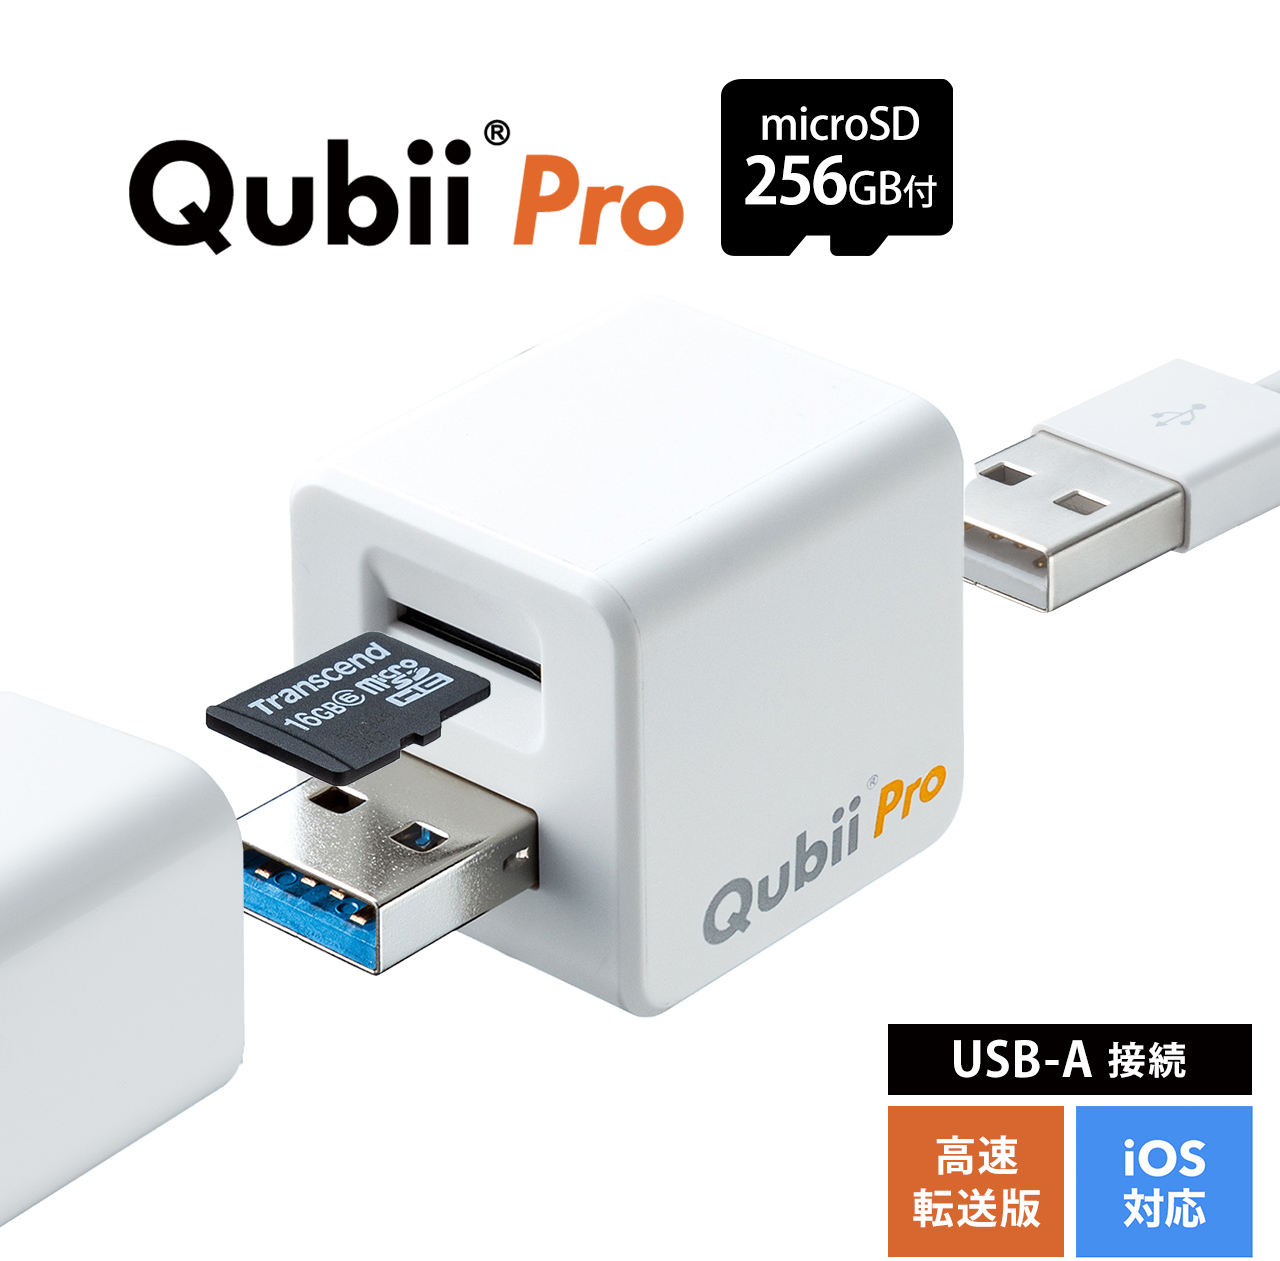 TS256GUSD300S-A付き】Qubii Pro ホワイト microSDカード(256GB)セット